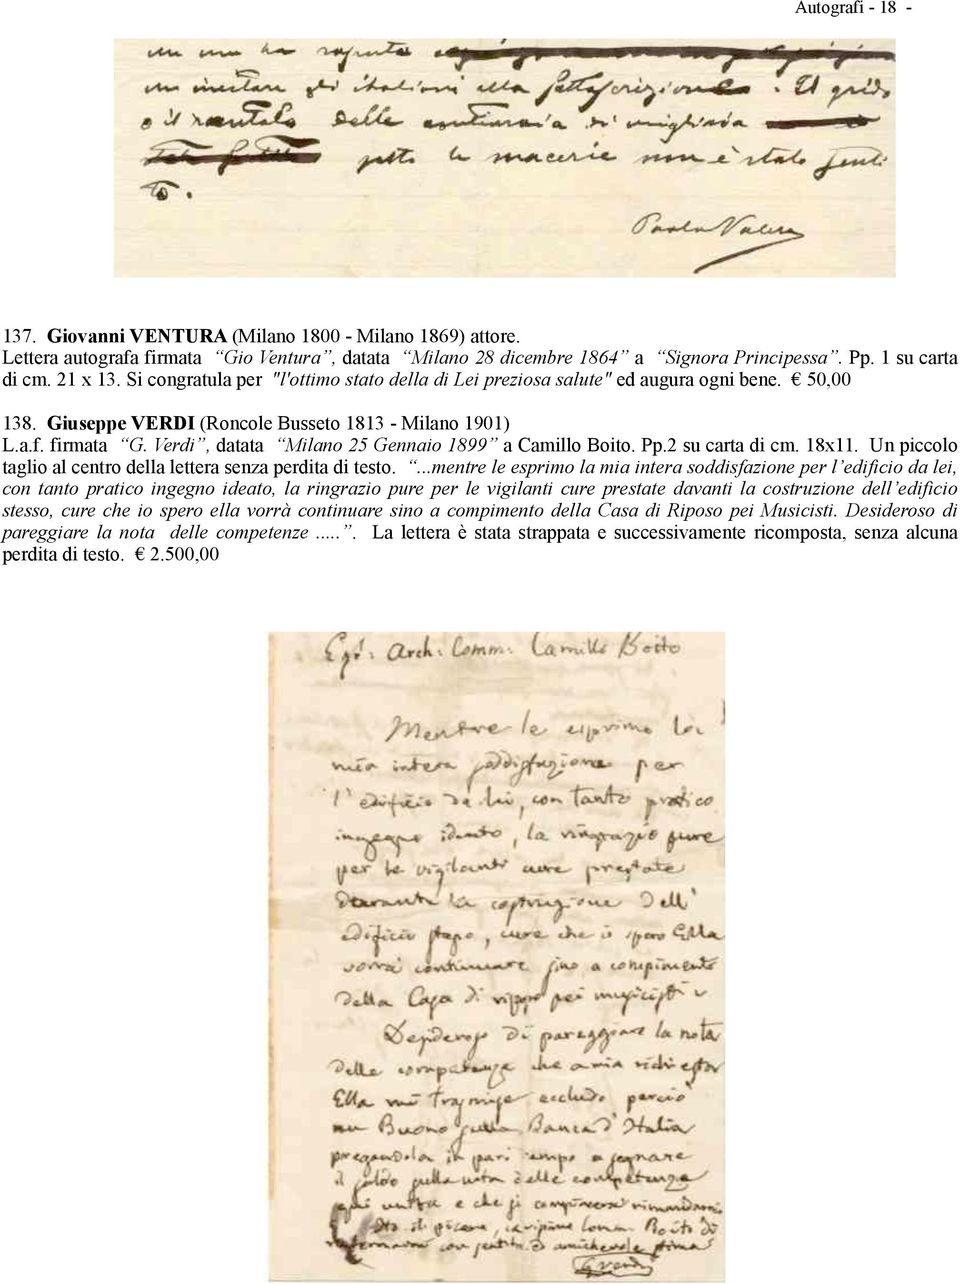 Verdi, datata Milano 25 Gennaio 1899 a Camillo Boito. Pp.2 su carta di cm. 18x11. Un piccolo taglio al centro della lettera senza perdita di testo.